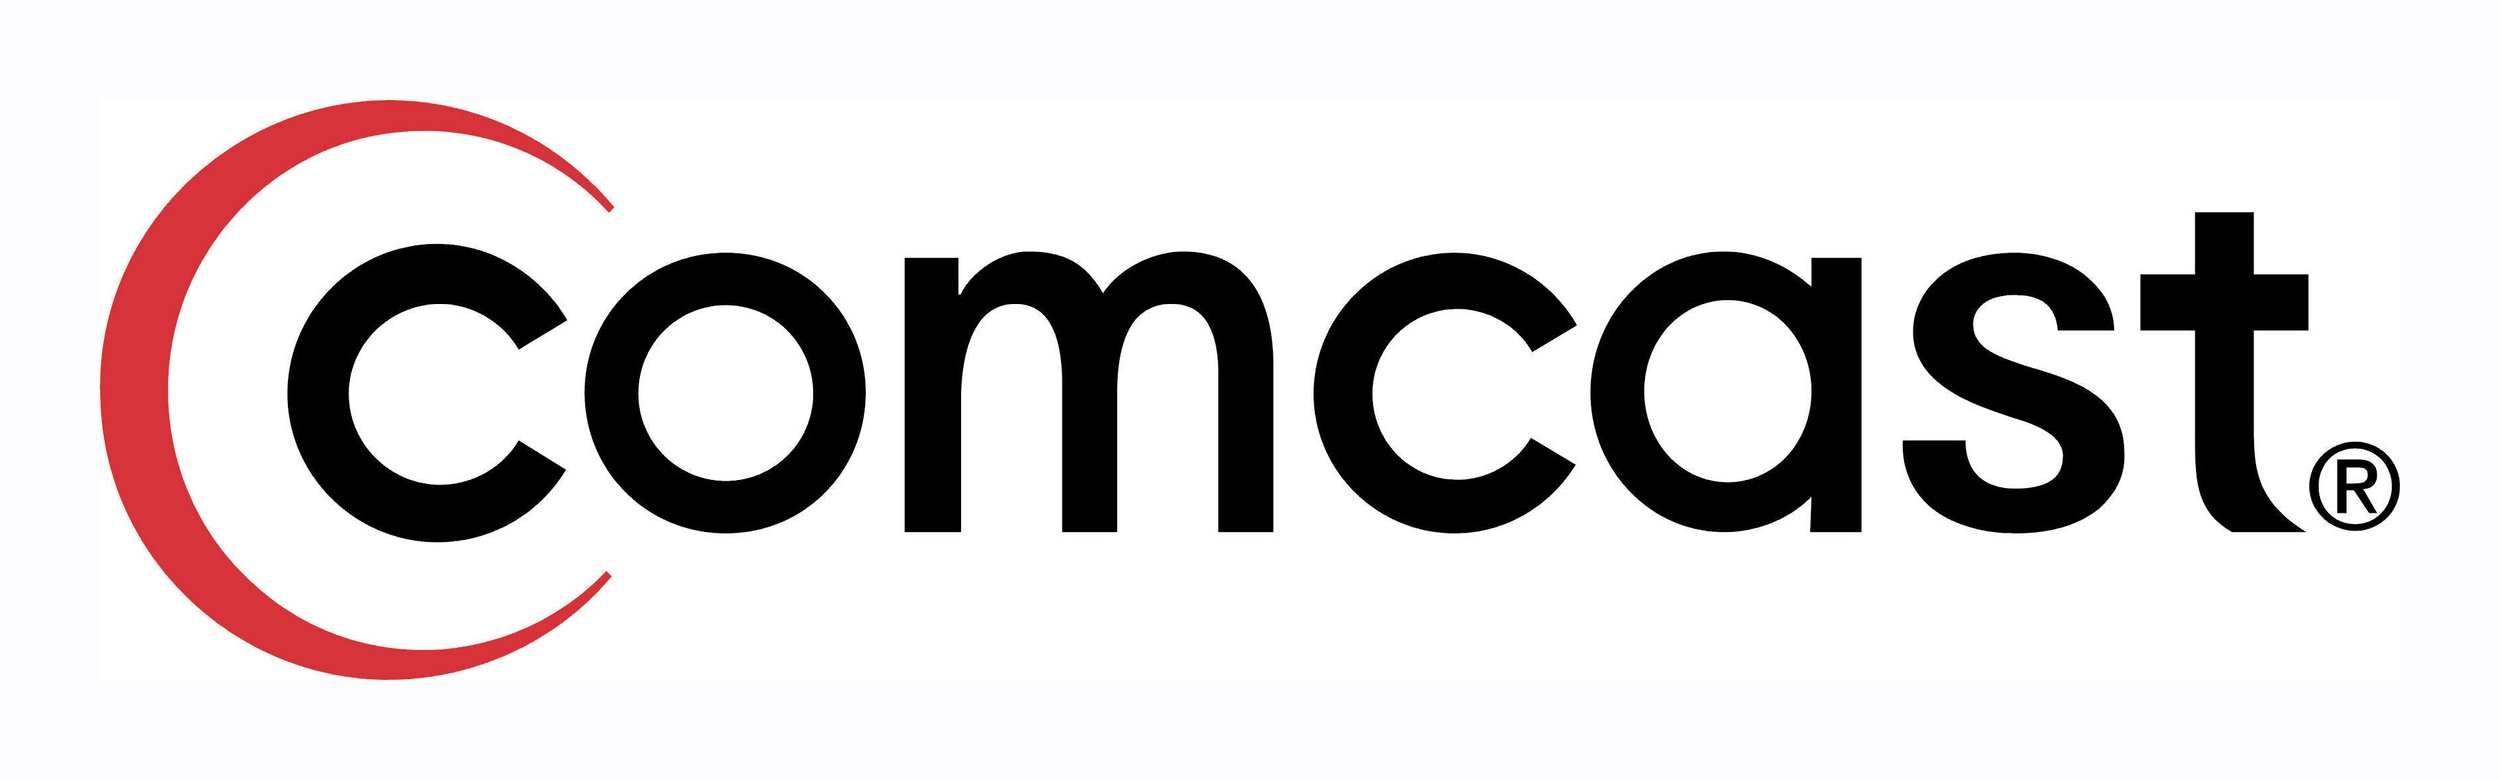 Comcast-Logo (2).jpg